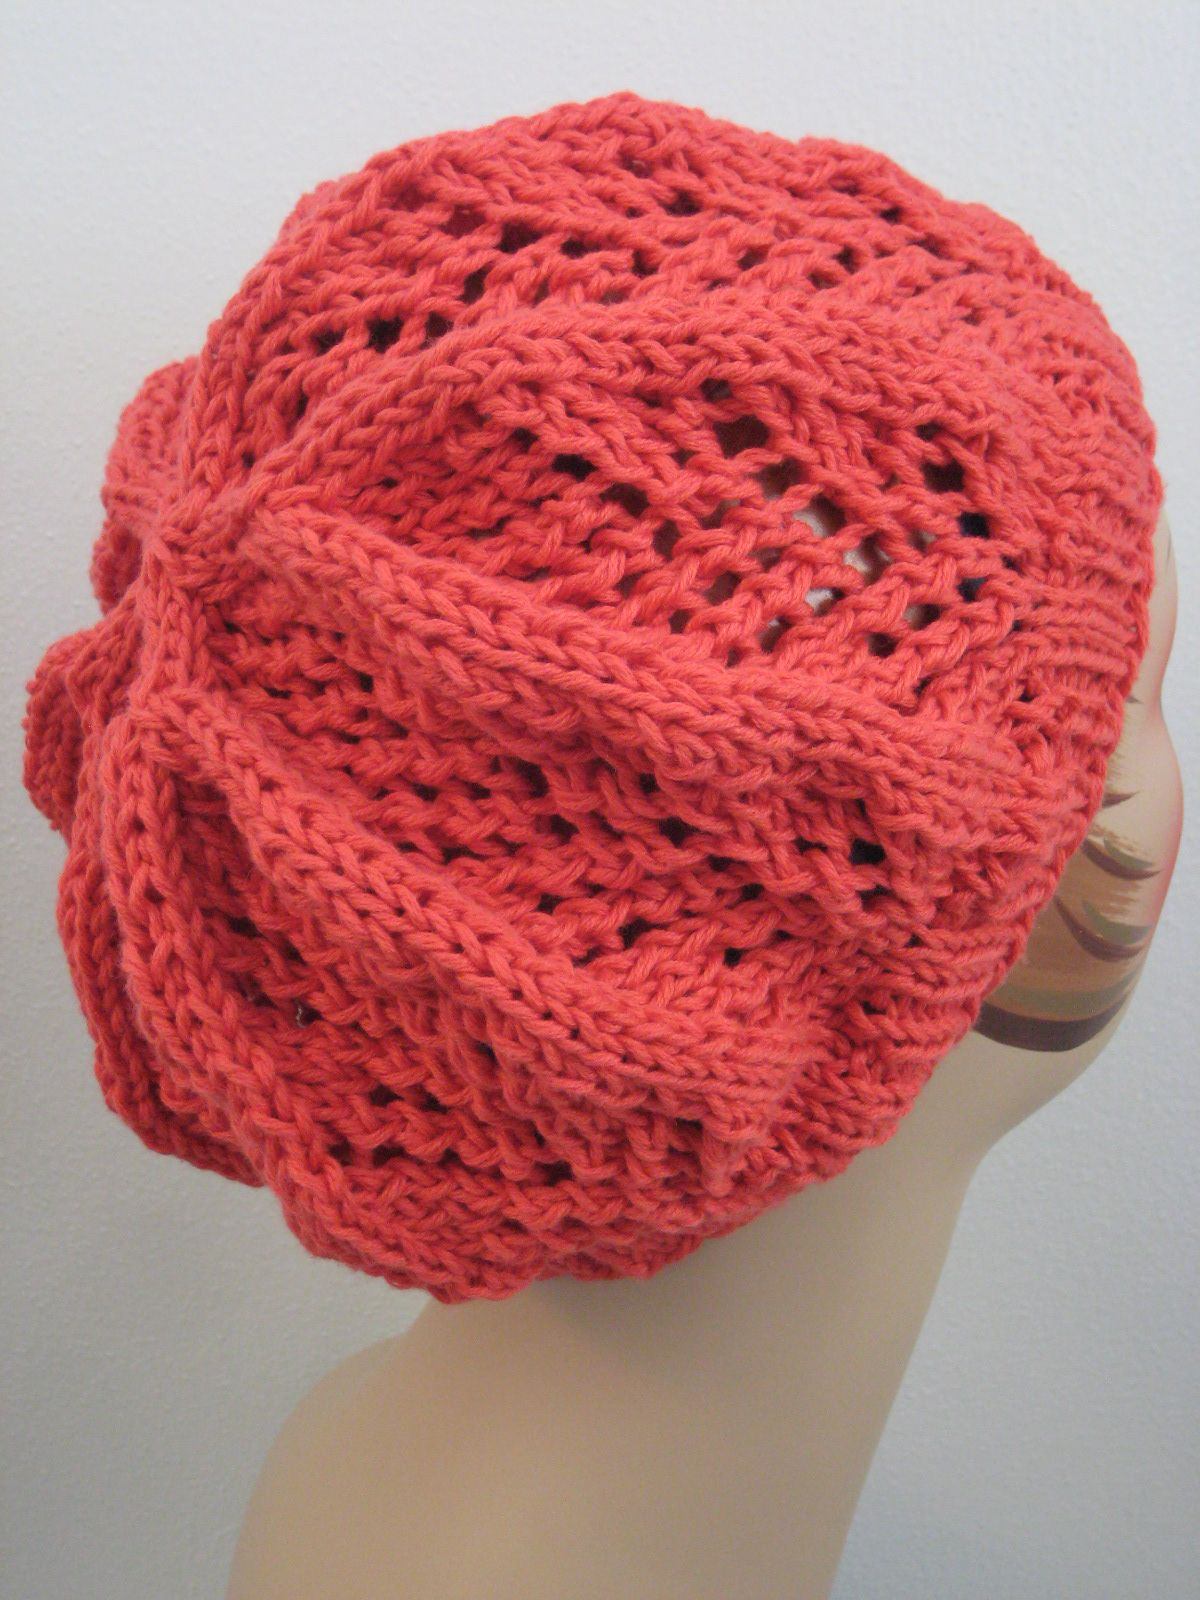 Lace Hat Crochet Pattern Free Knitting Pattern Hats Fan Lace Hat Knitting Hat Free